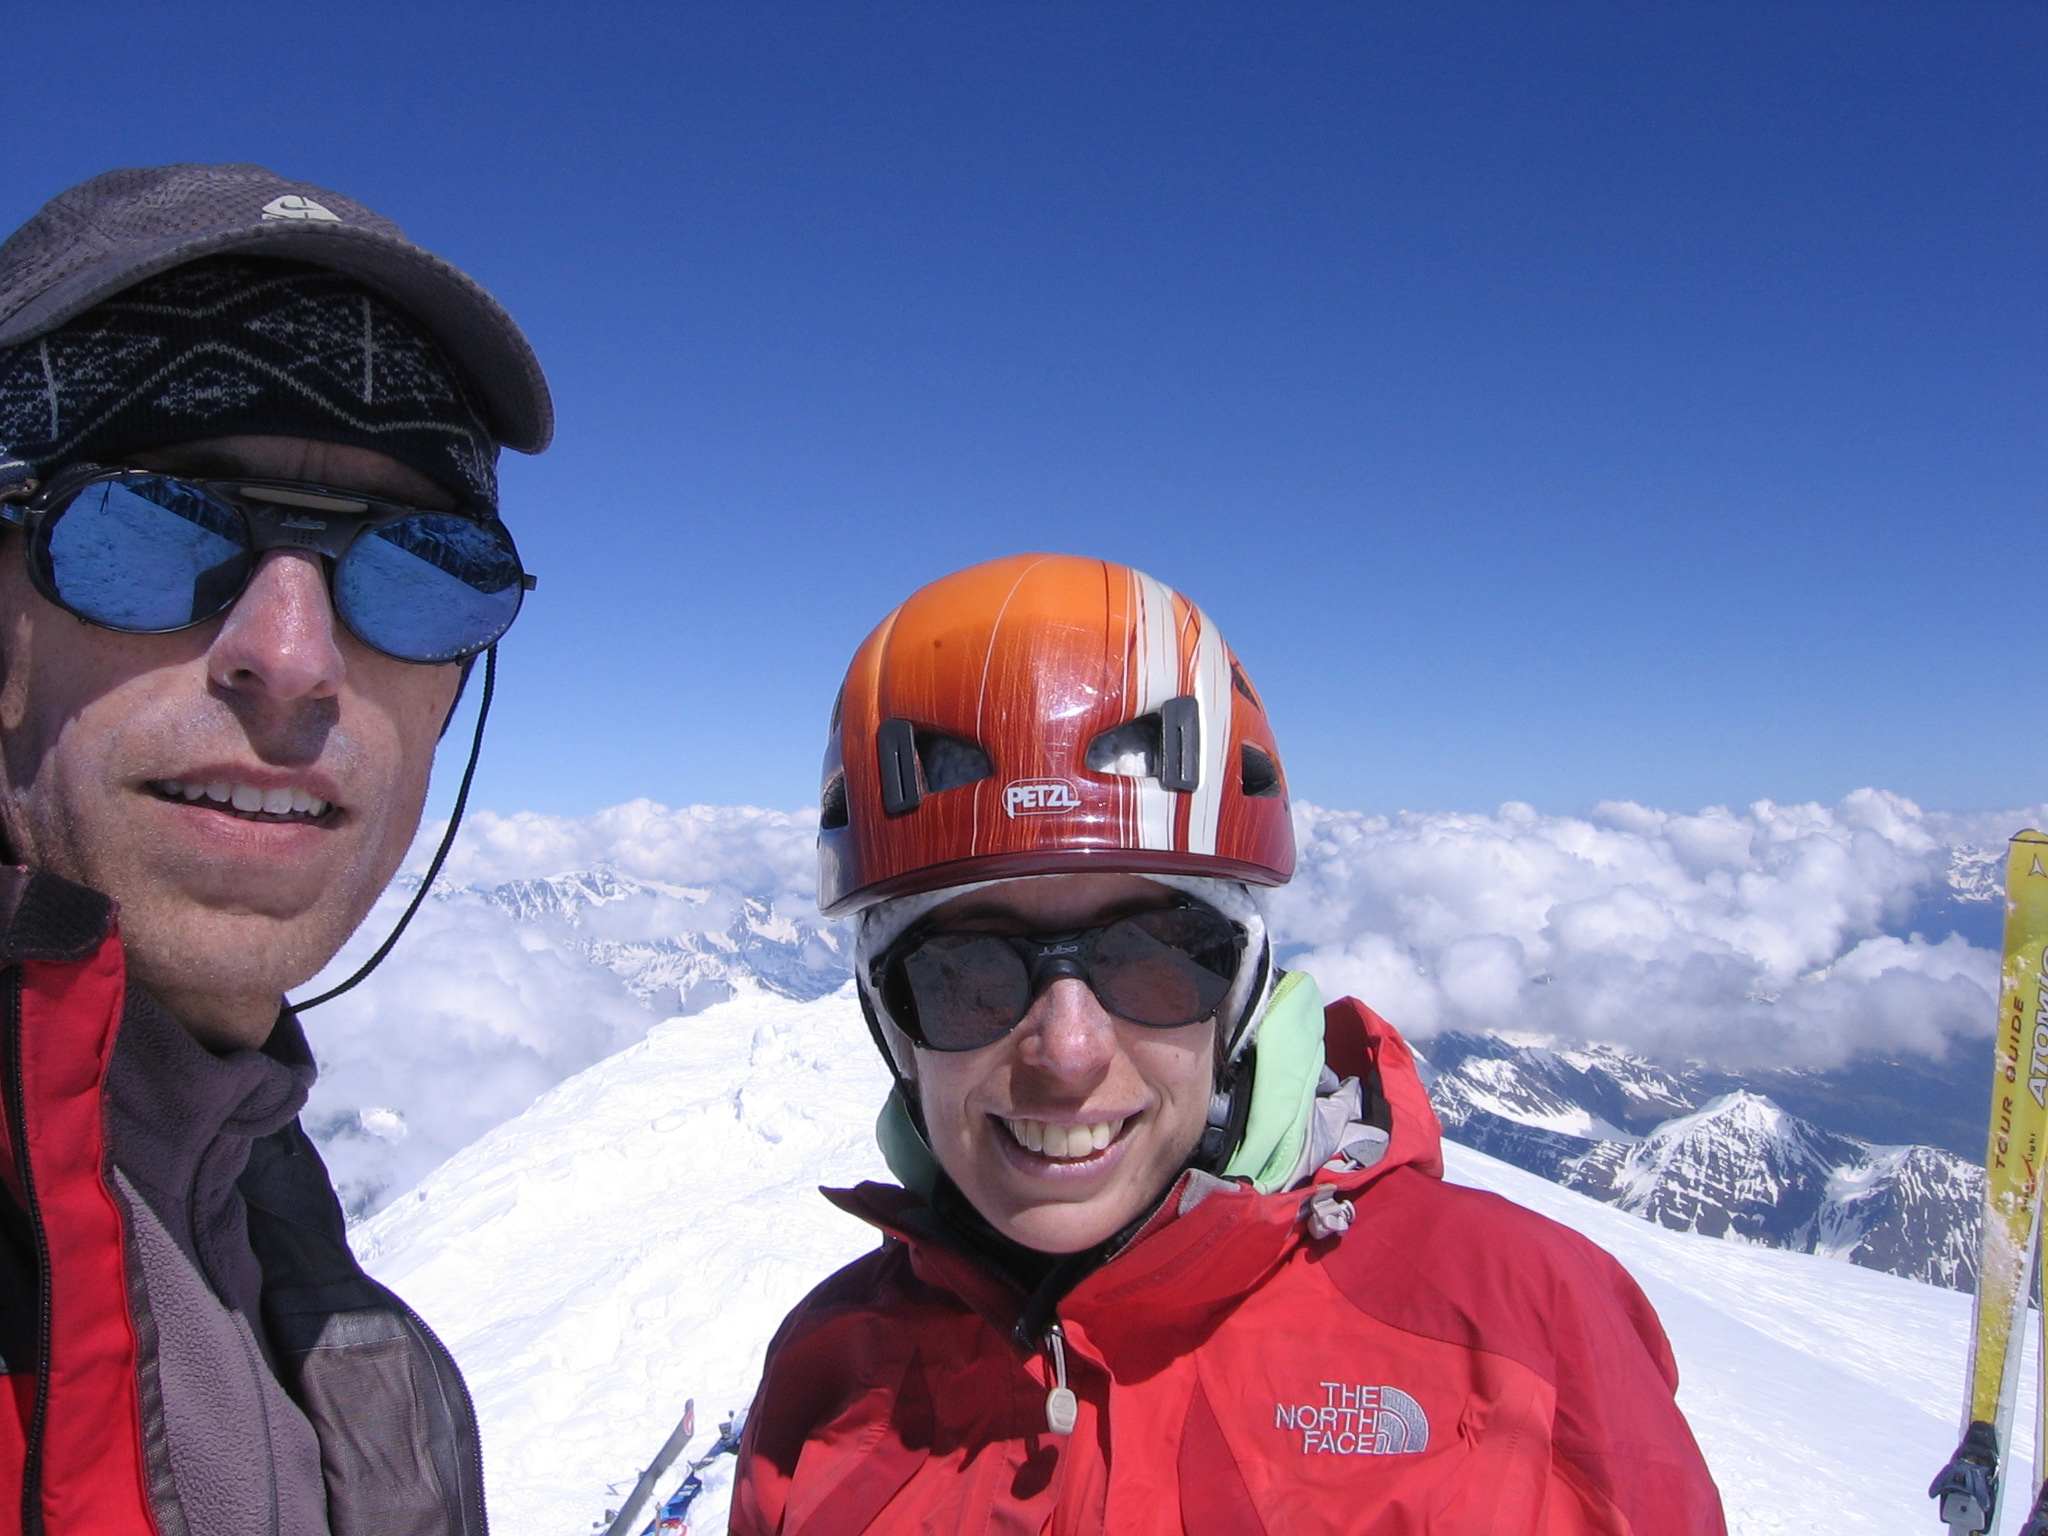 Sommet ! : Evelyne et Gégé, deux ex-cafiste de Gre qui se retrouvent 10ans plus tard au sommet du Mont-Blanc !
Alors qu'est-ce tu deviens ?